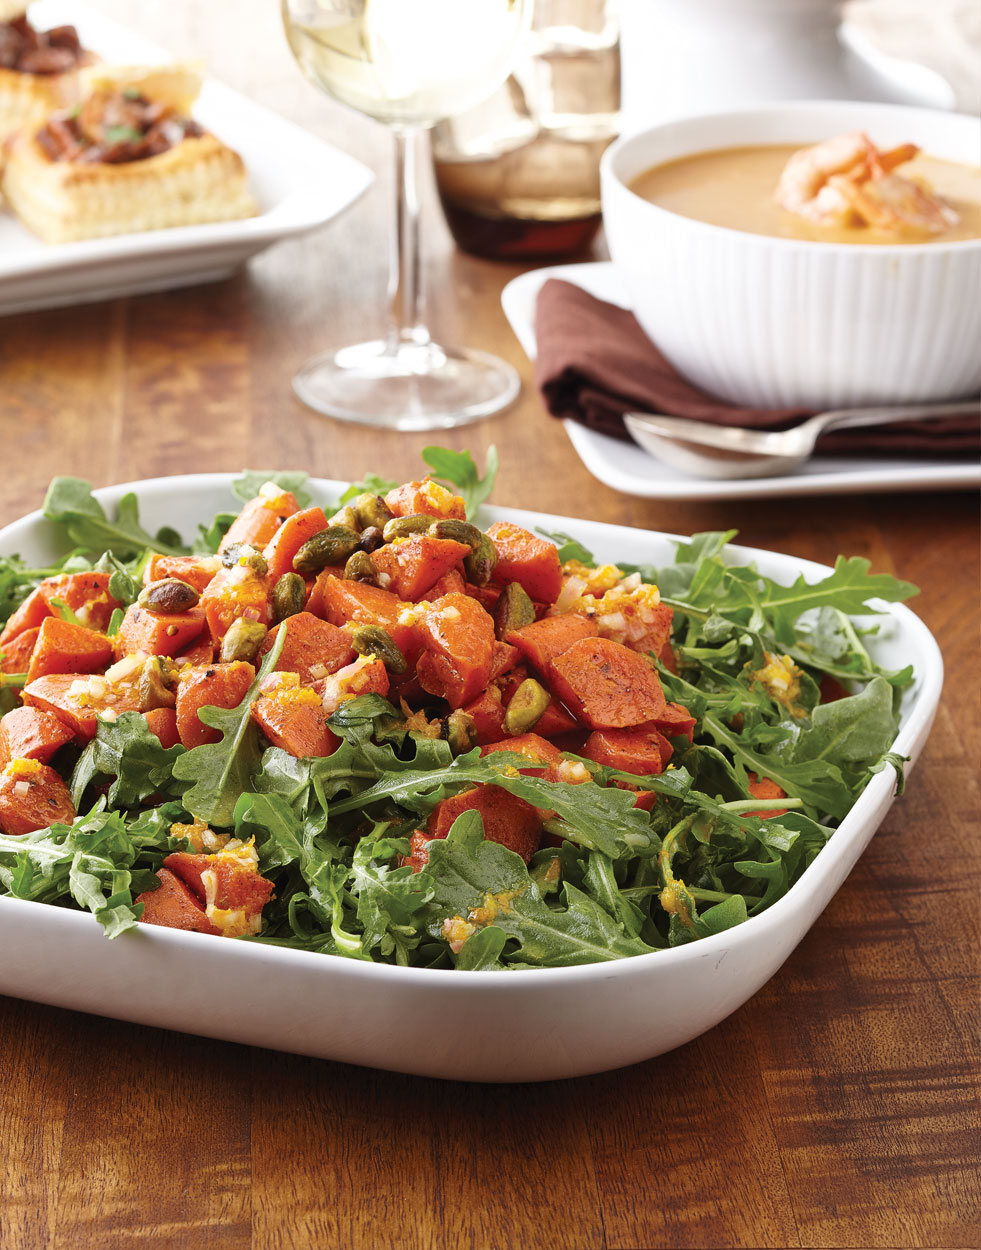 Cinnamon-Roasted Carrot & Arugula Salad with Orange Vinaigrette Recipe